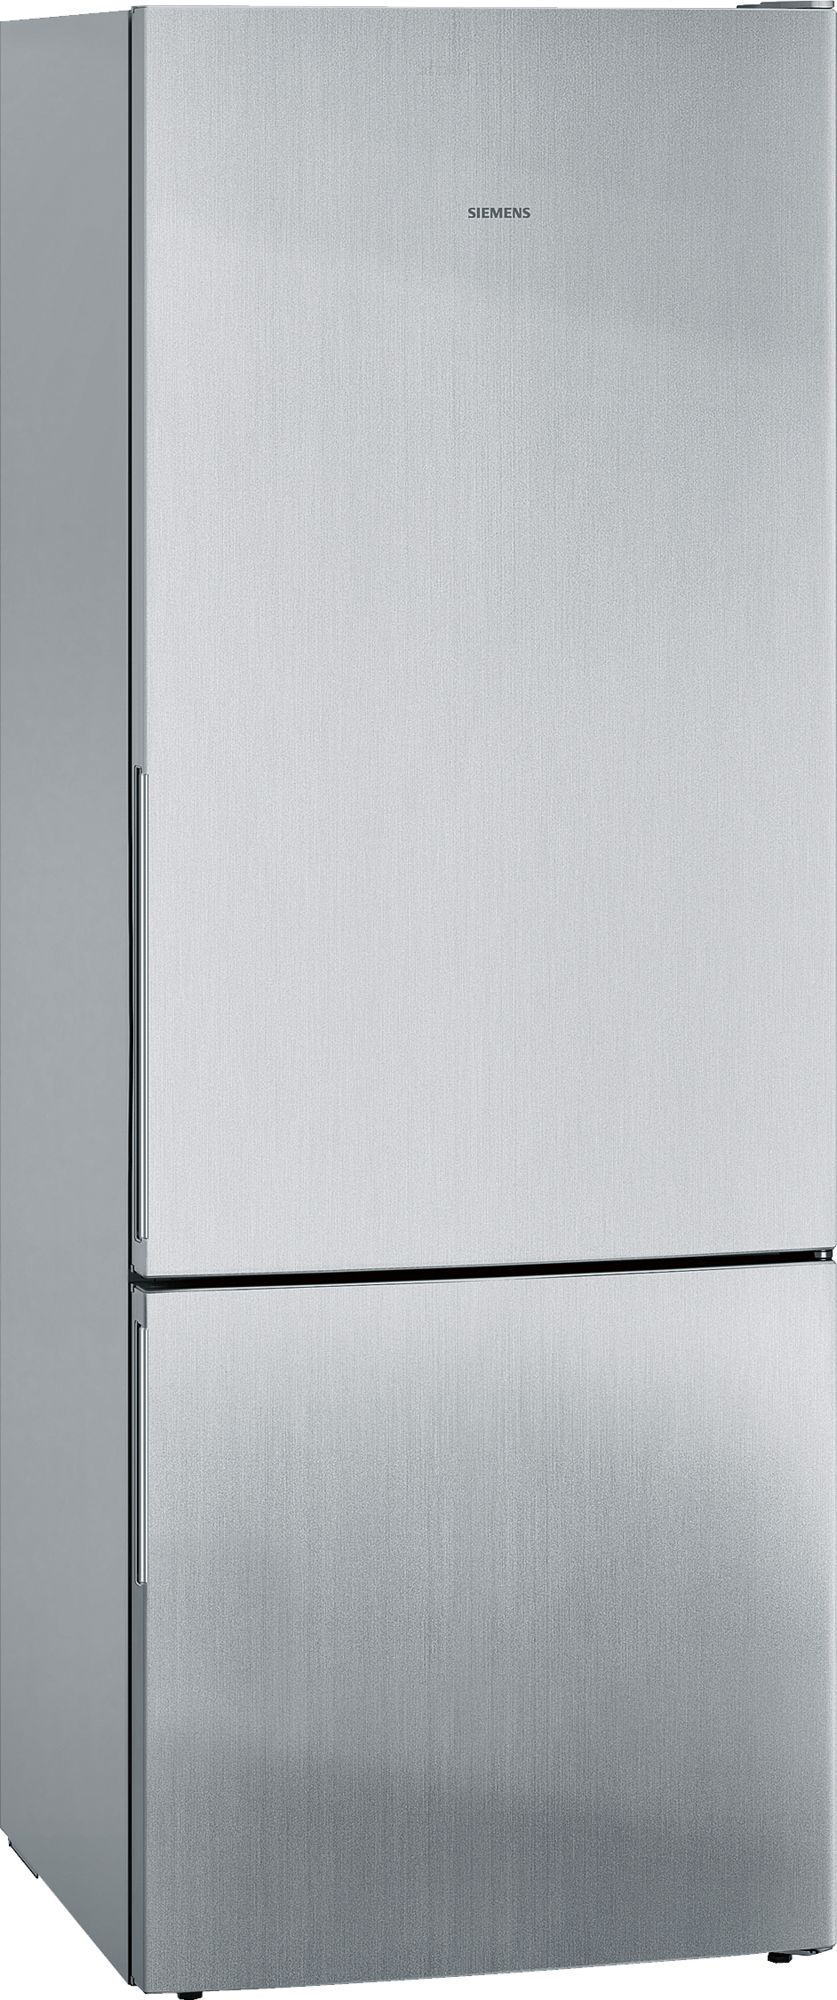 iQ300 Alttan Donduruculu Buzdolabı 191 x 70 cm Inox görünümlü